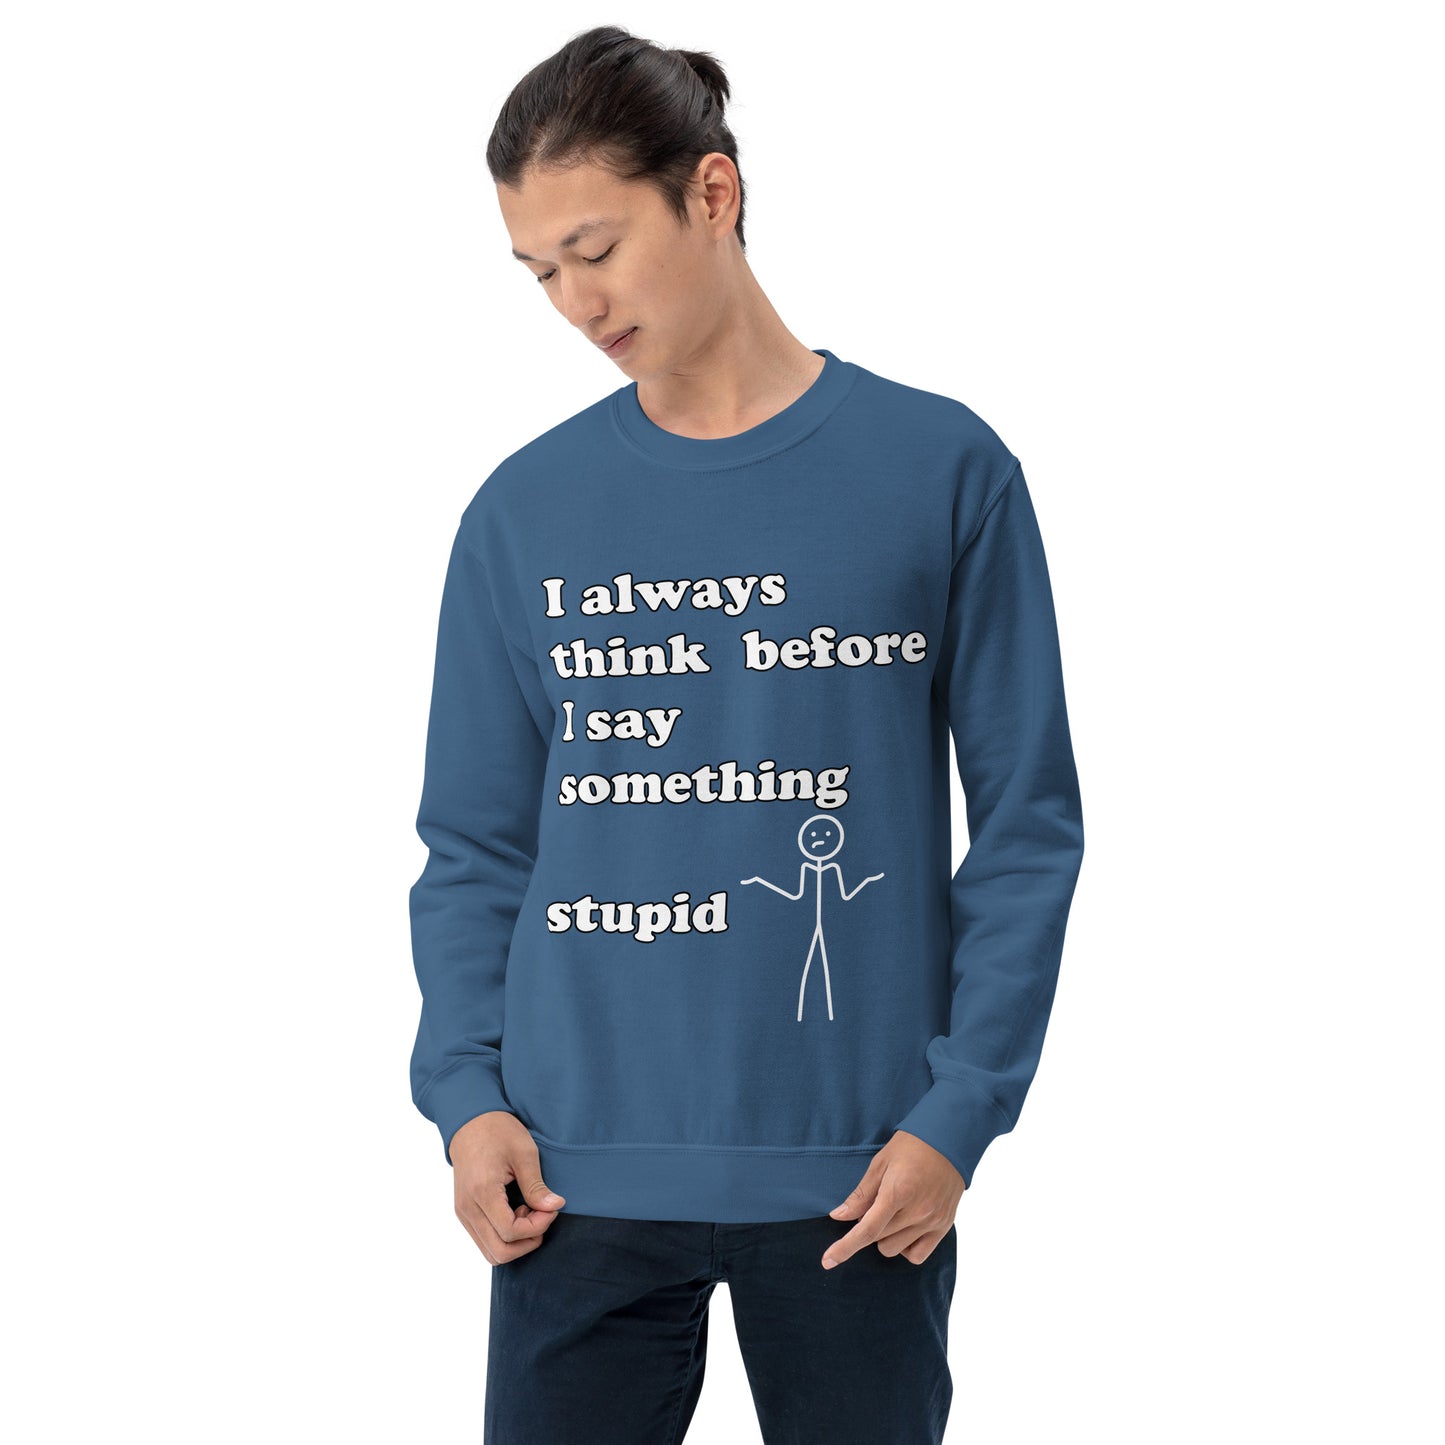 Man with indigo blue sweatshirt with text "I always think before I say something stupid"